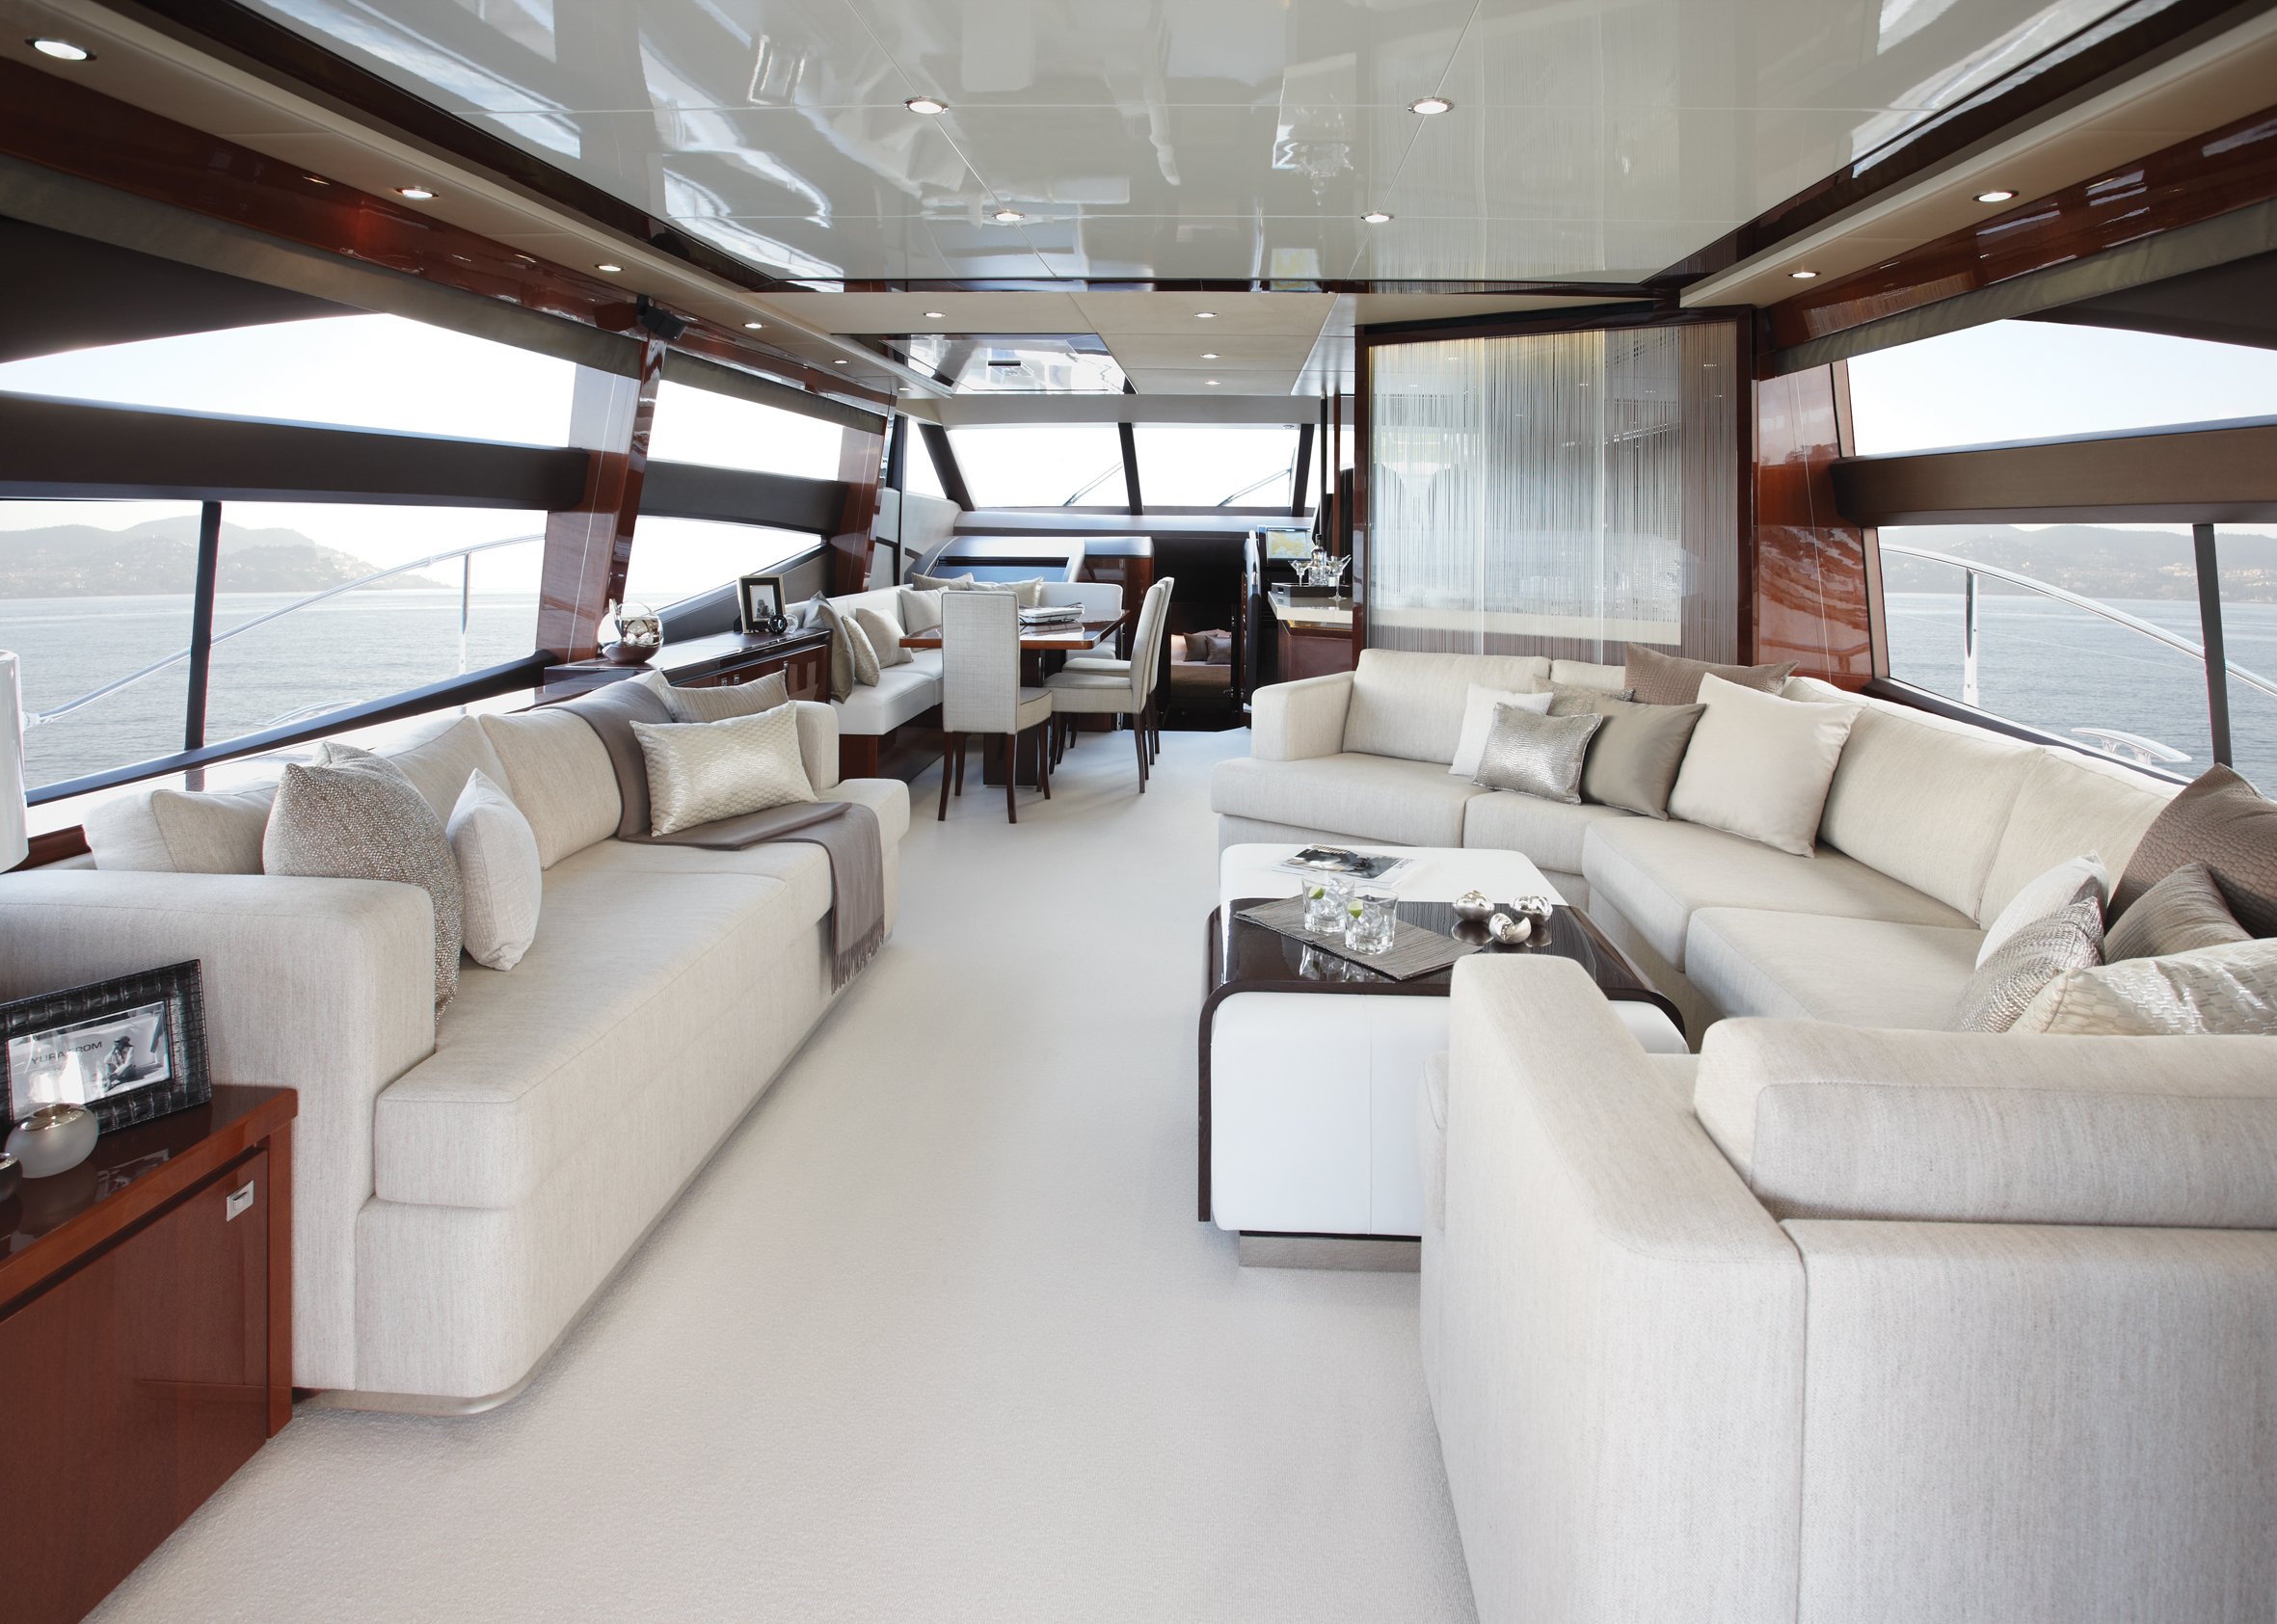 Design Interior Luxury Room Saloon Style Yacht 2362x1685